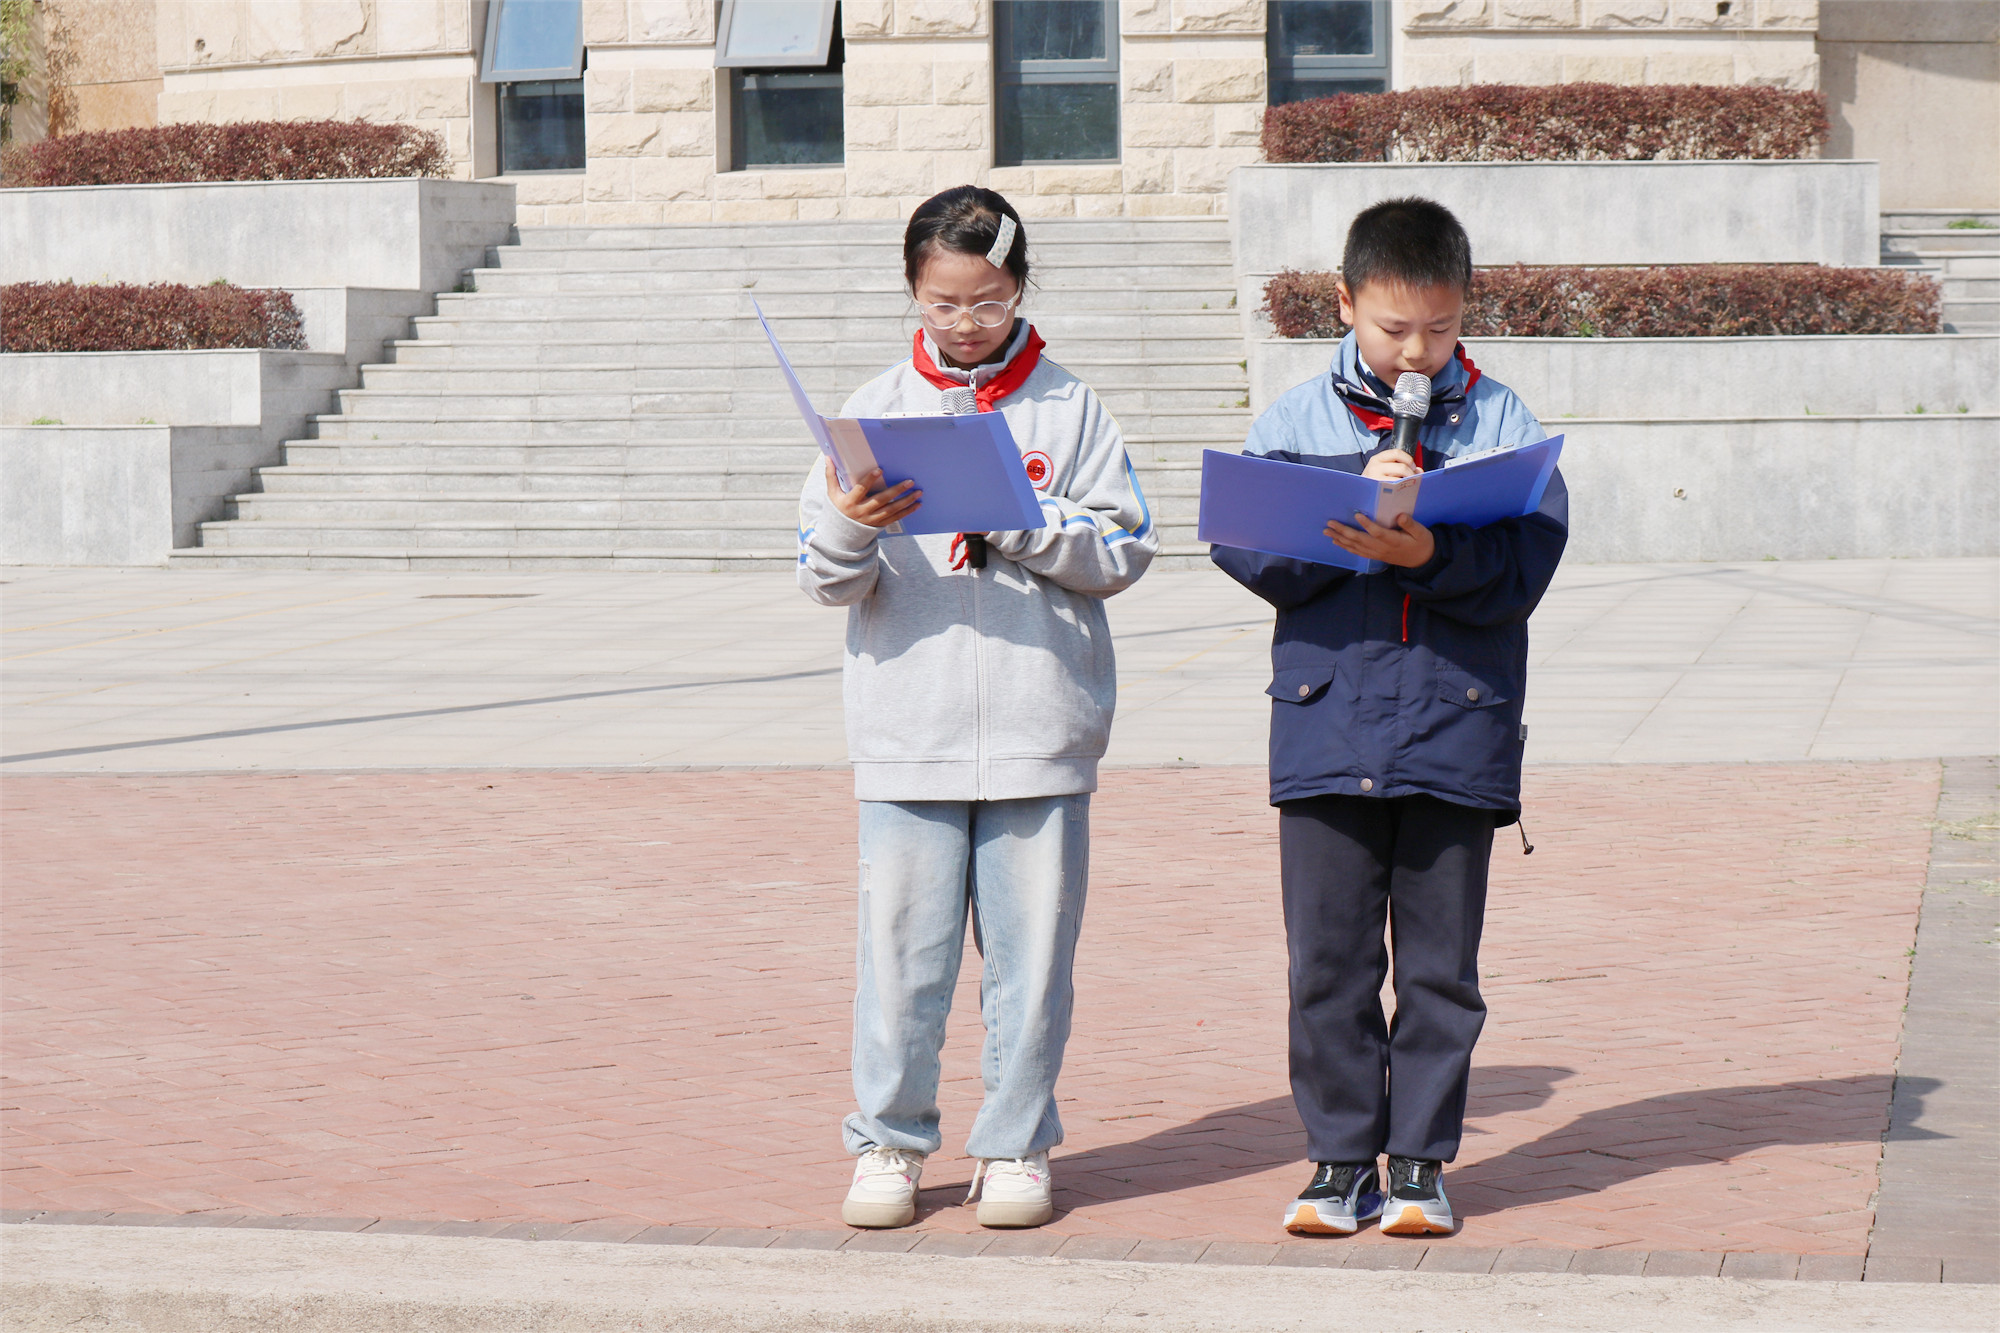 快乐阅读 书香校园 | 英迪国际学校举行第7周升旗仪式